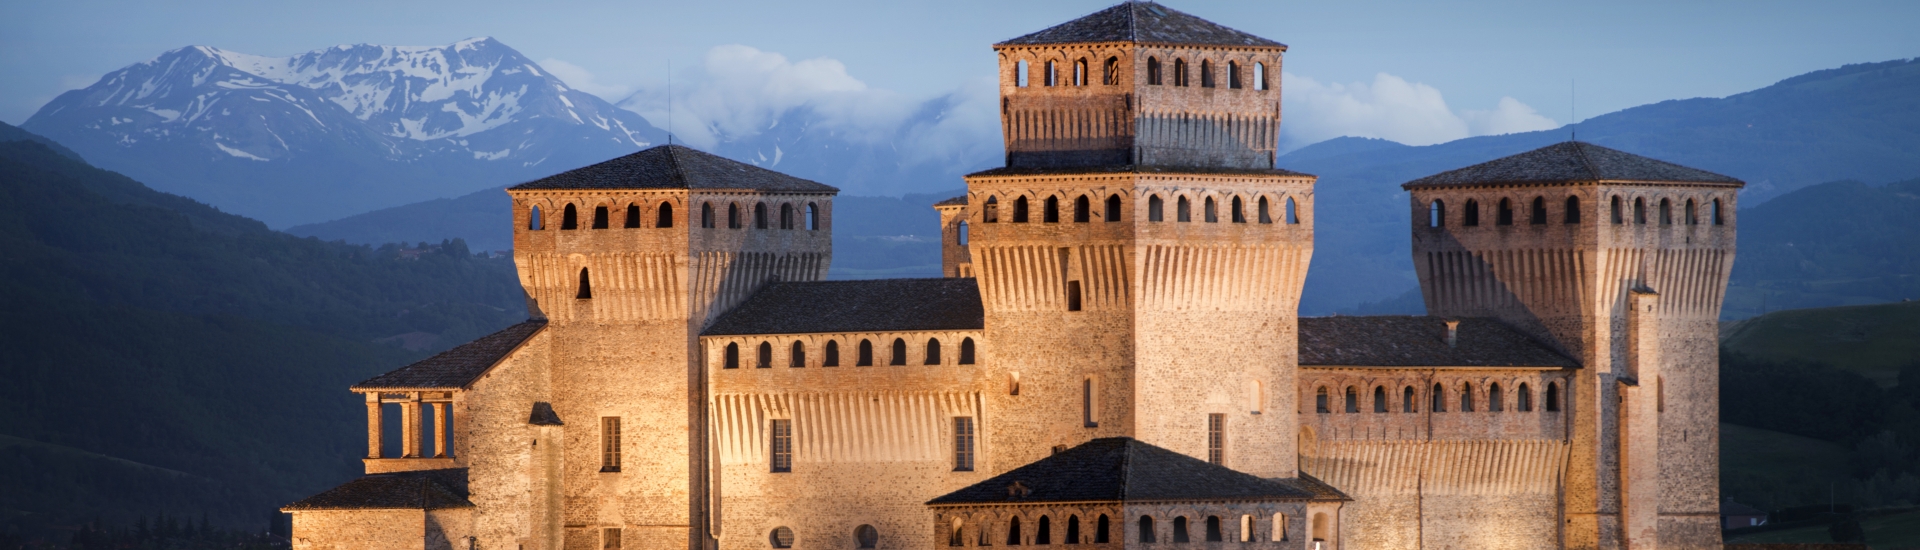 Castello di Torrechiara - Castello di Torrechiara, notturno foto di: |Alberto Ghizzi Panizza| - Alberto Ghizzi Panizza.com